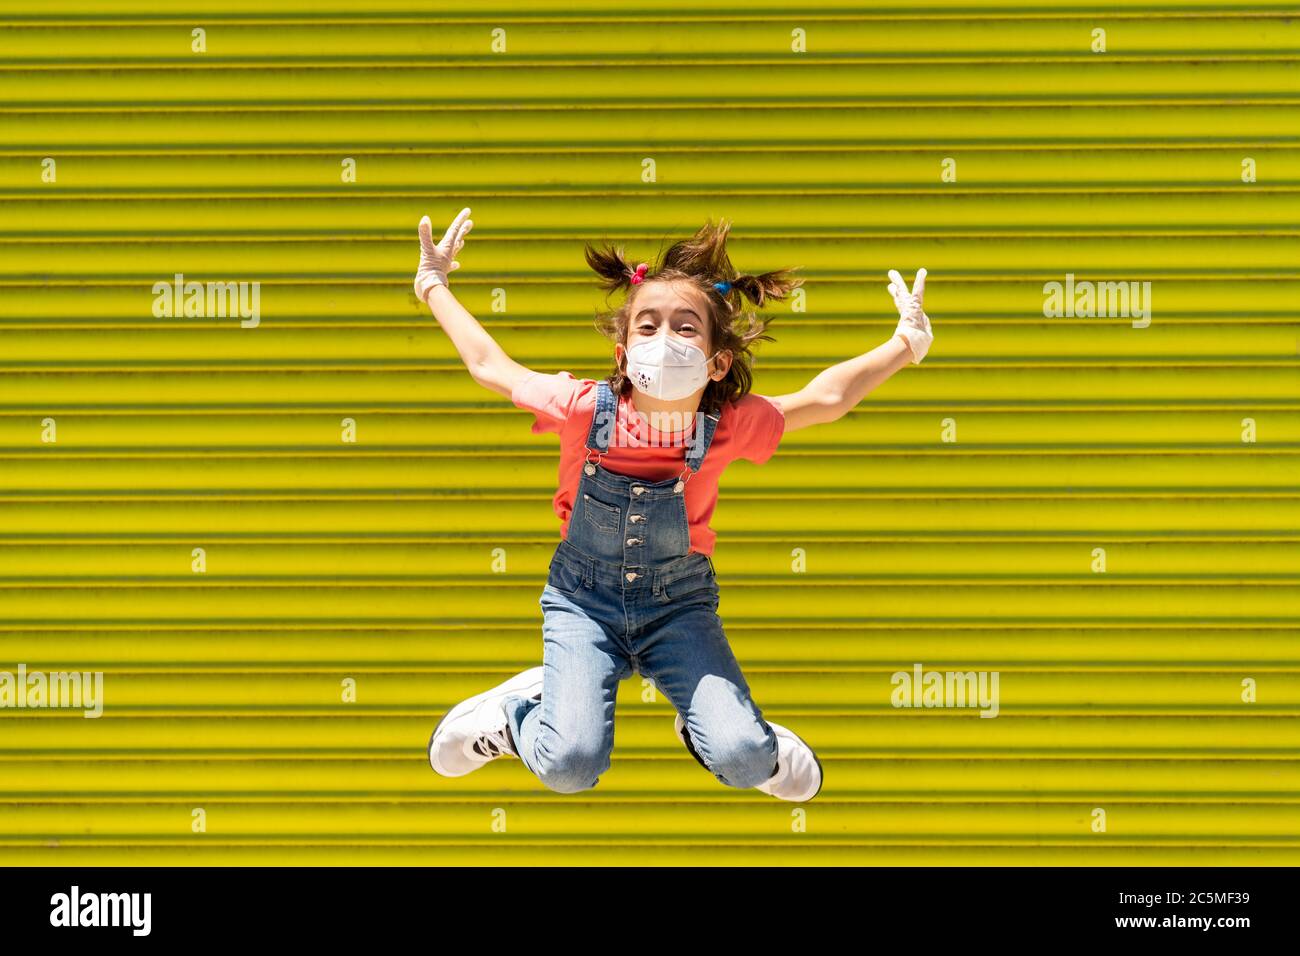 Bambina saltando indossando una maschera di protezione contro il coronavirus Foto Stock